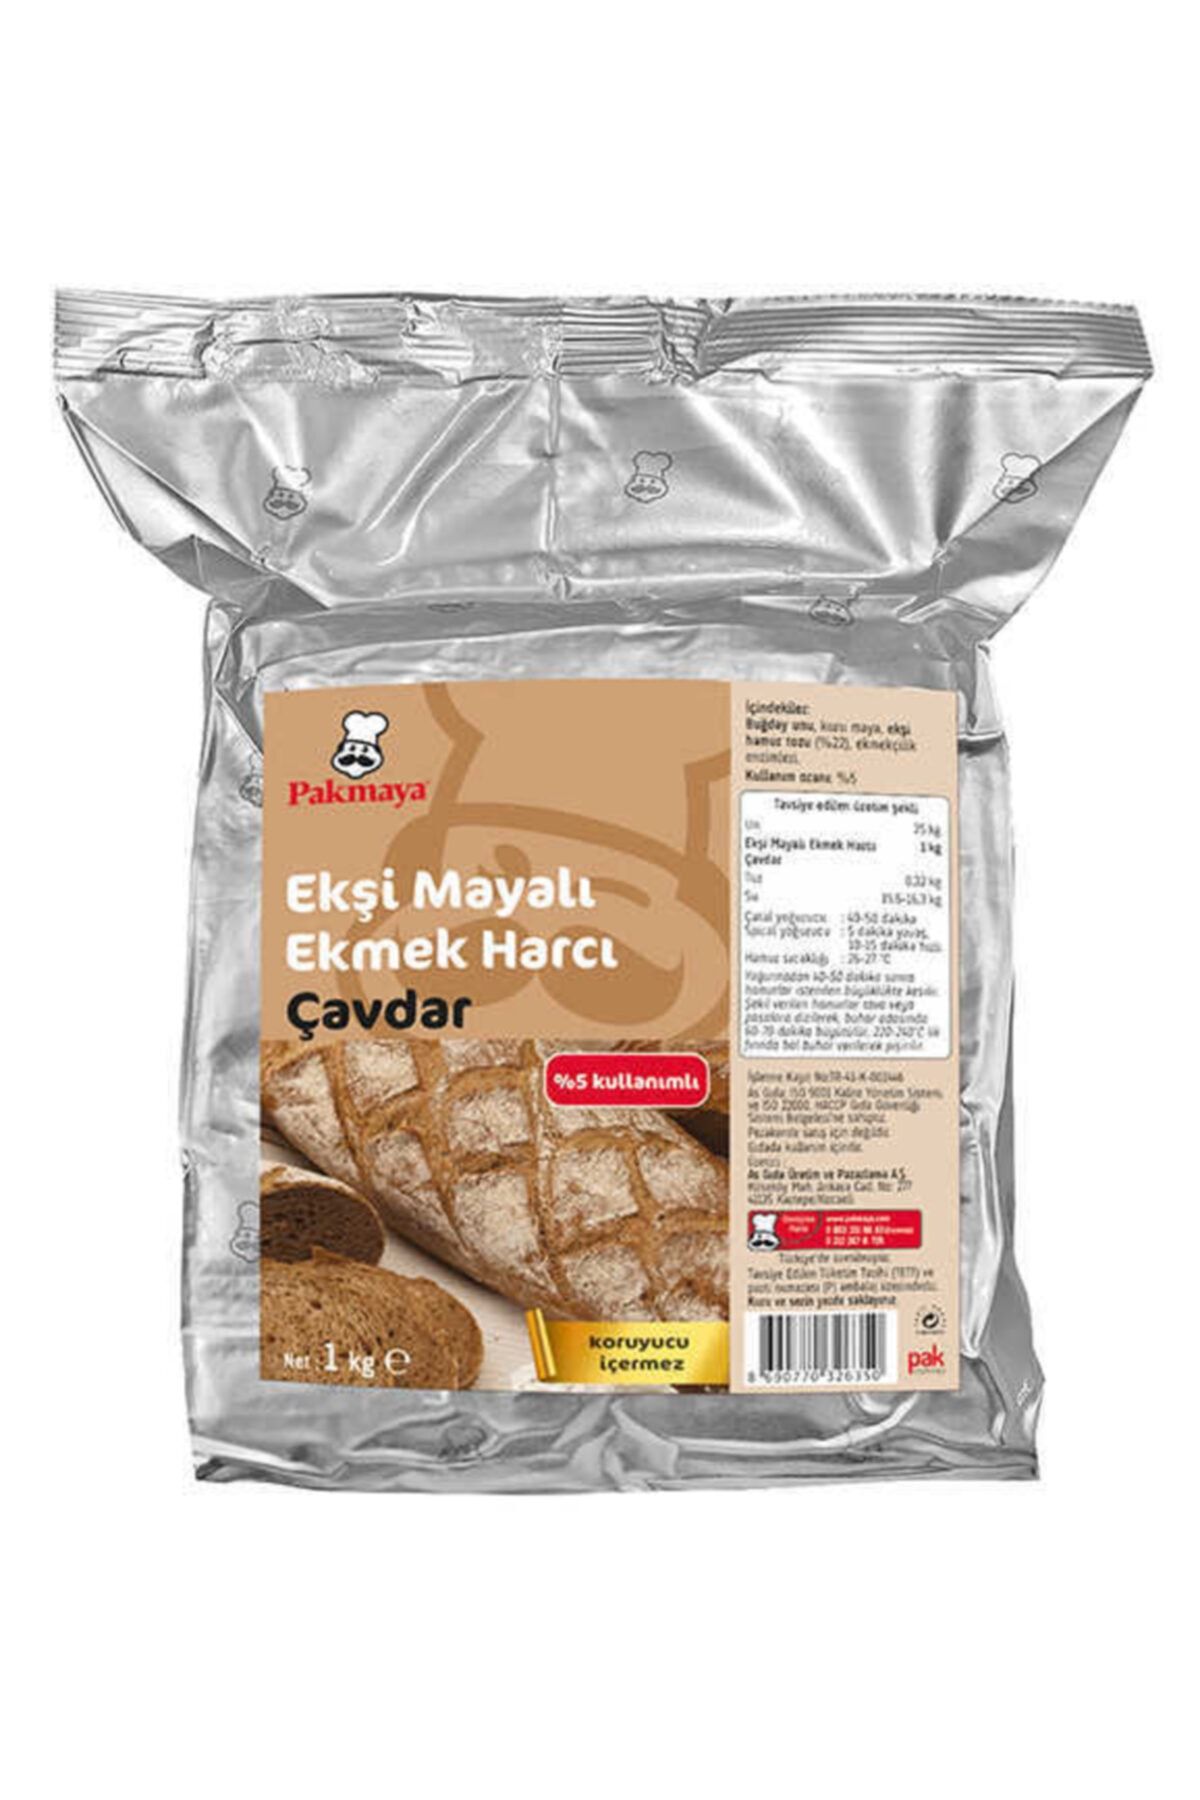 Pakmaya Pak Ekşi Mayalı Harç Çavdar Ekmeği 1kg